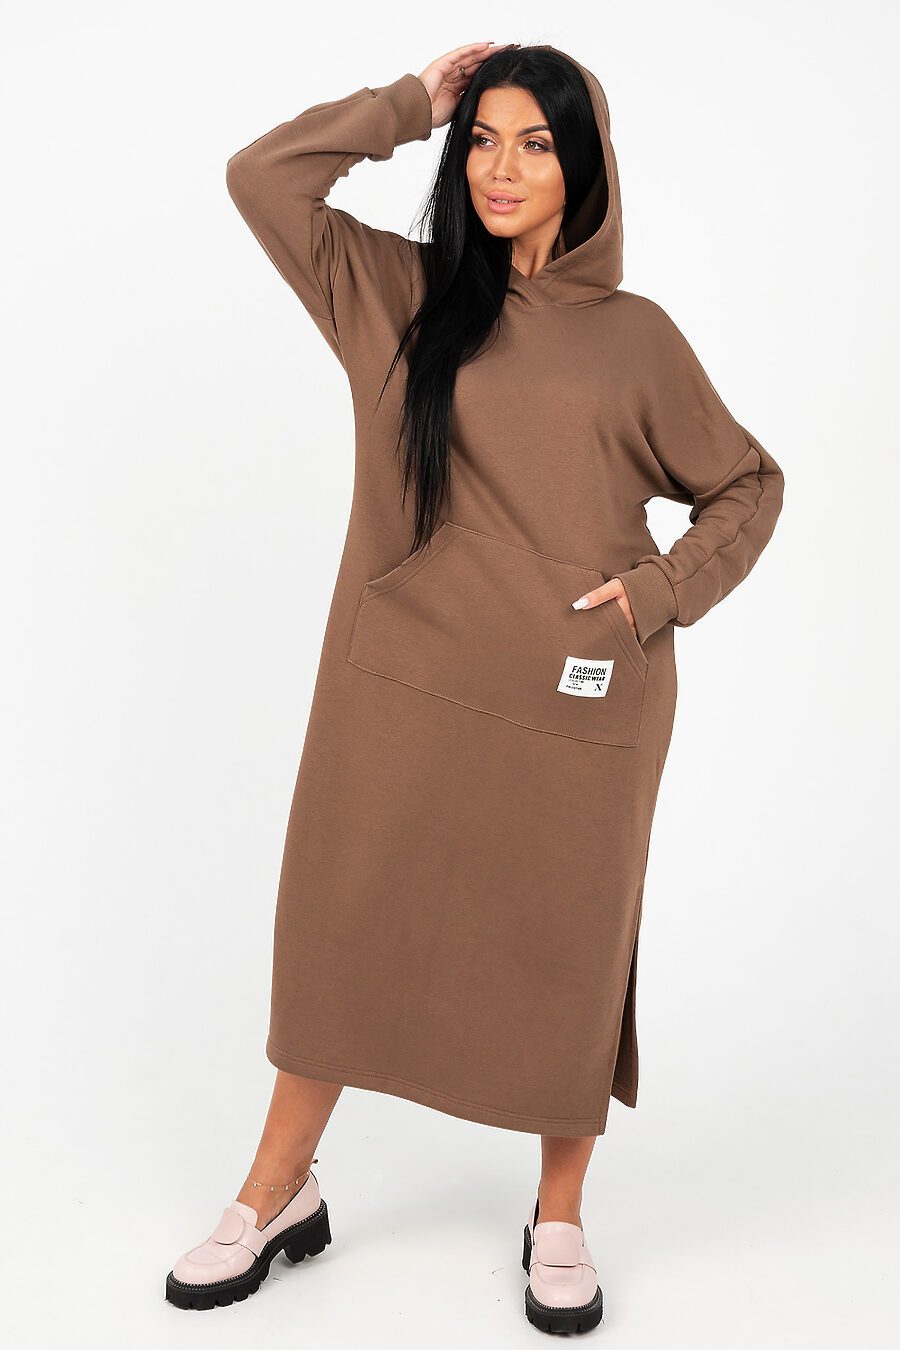 Платье 13655 для женщин НАТАЛИ 796197 купить оптом от производителя. Совместная покупка женской одежды в OptMoyo